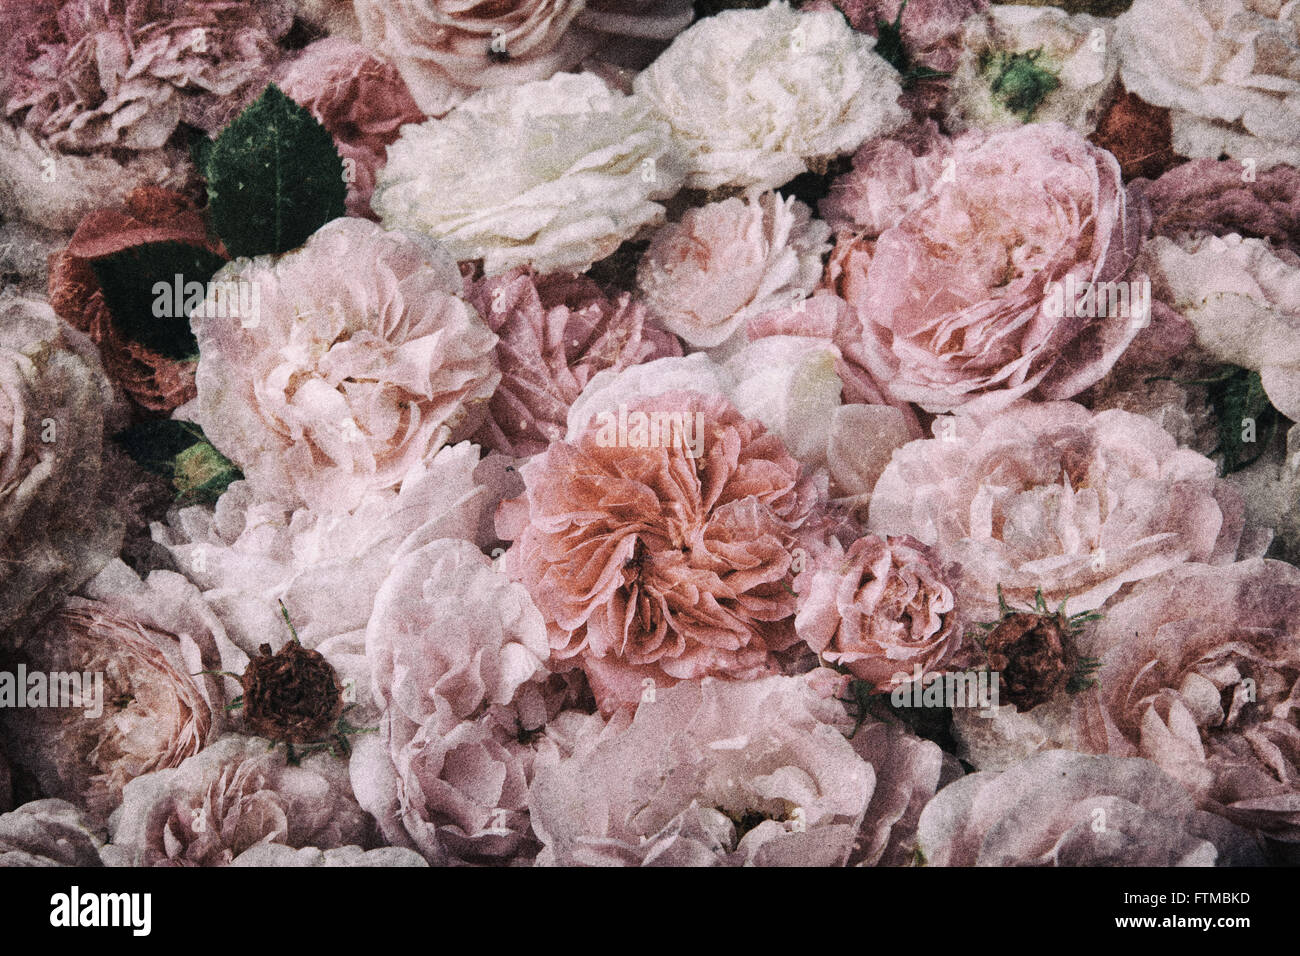 Image de fond roses vintage, nostalgique. Banque D'Images